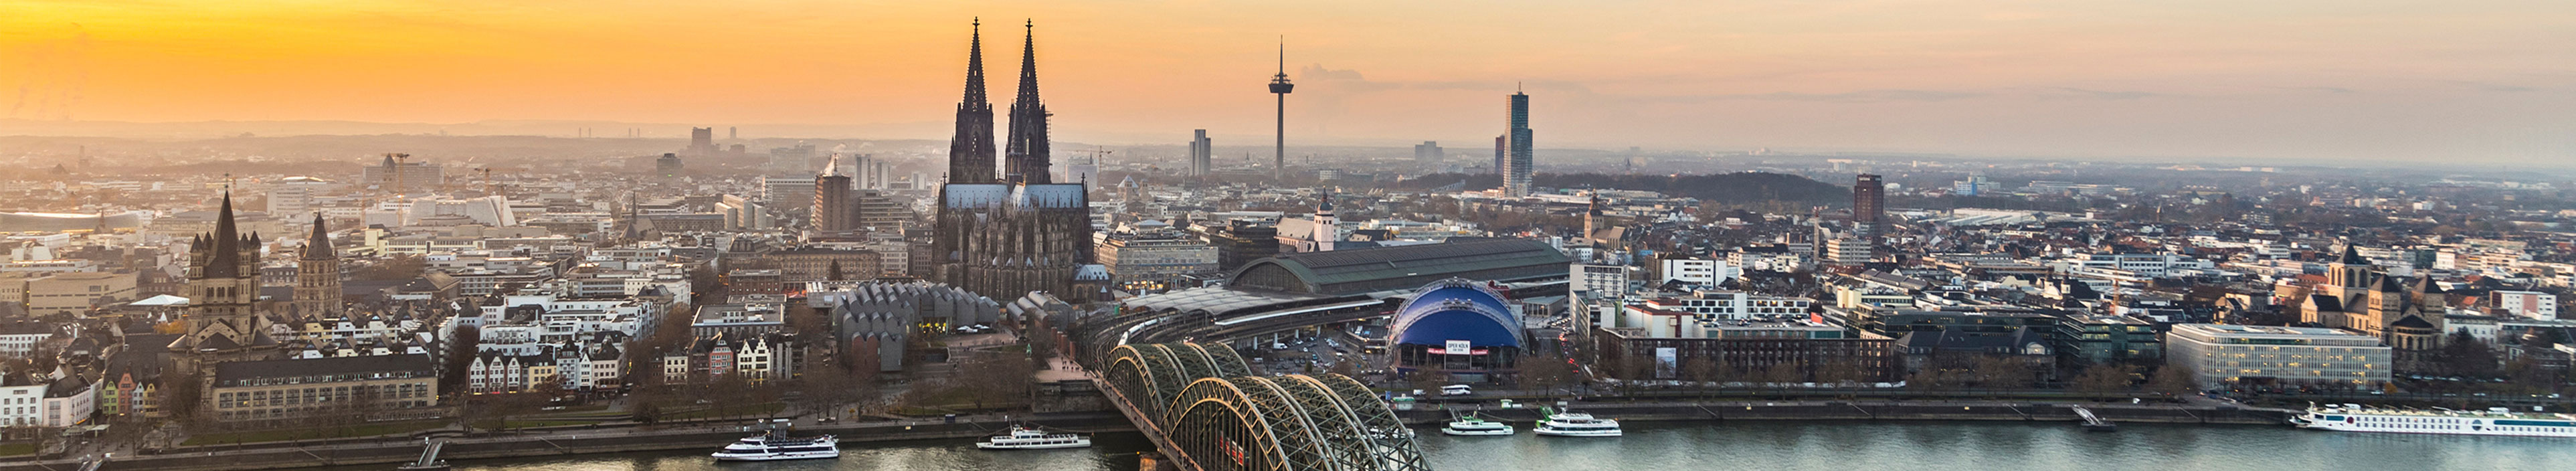 Luftaufnahme von Köln bei Sonnenuntergang